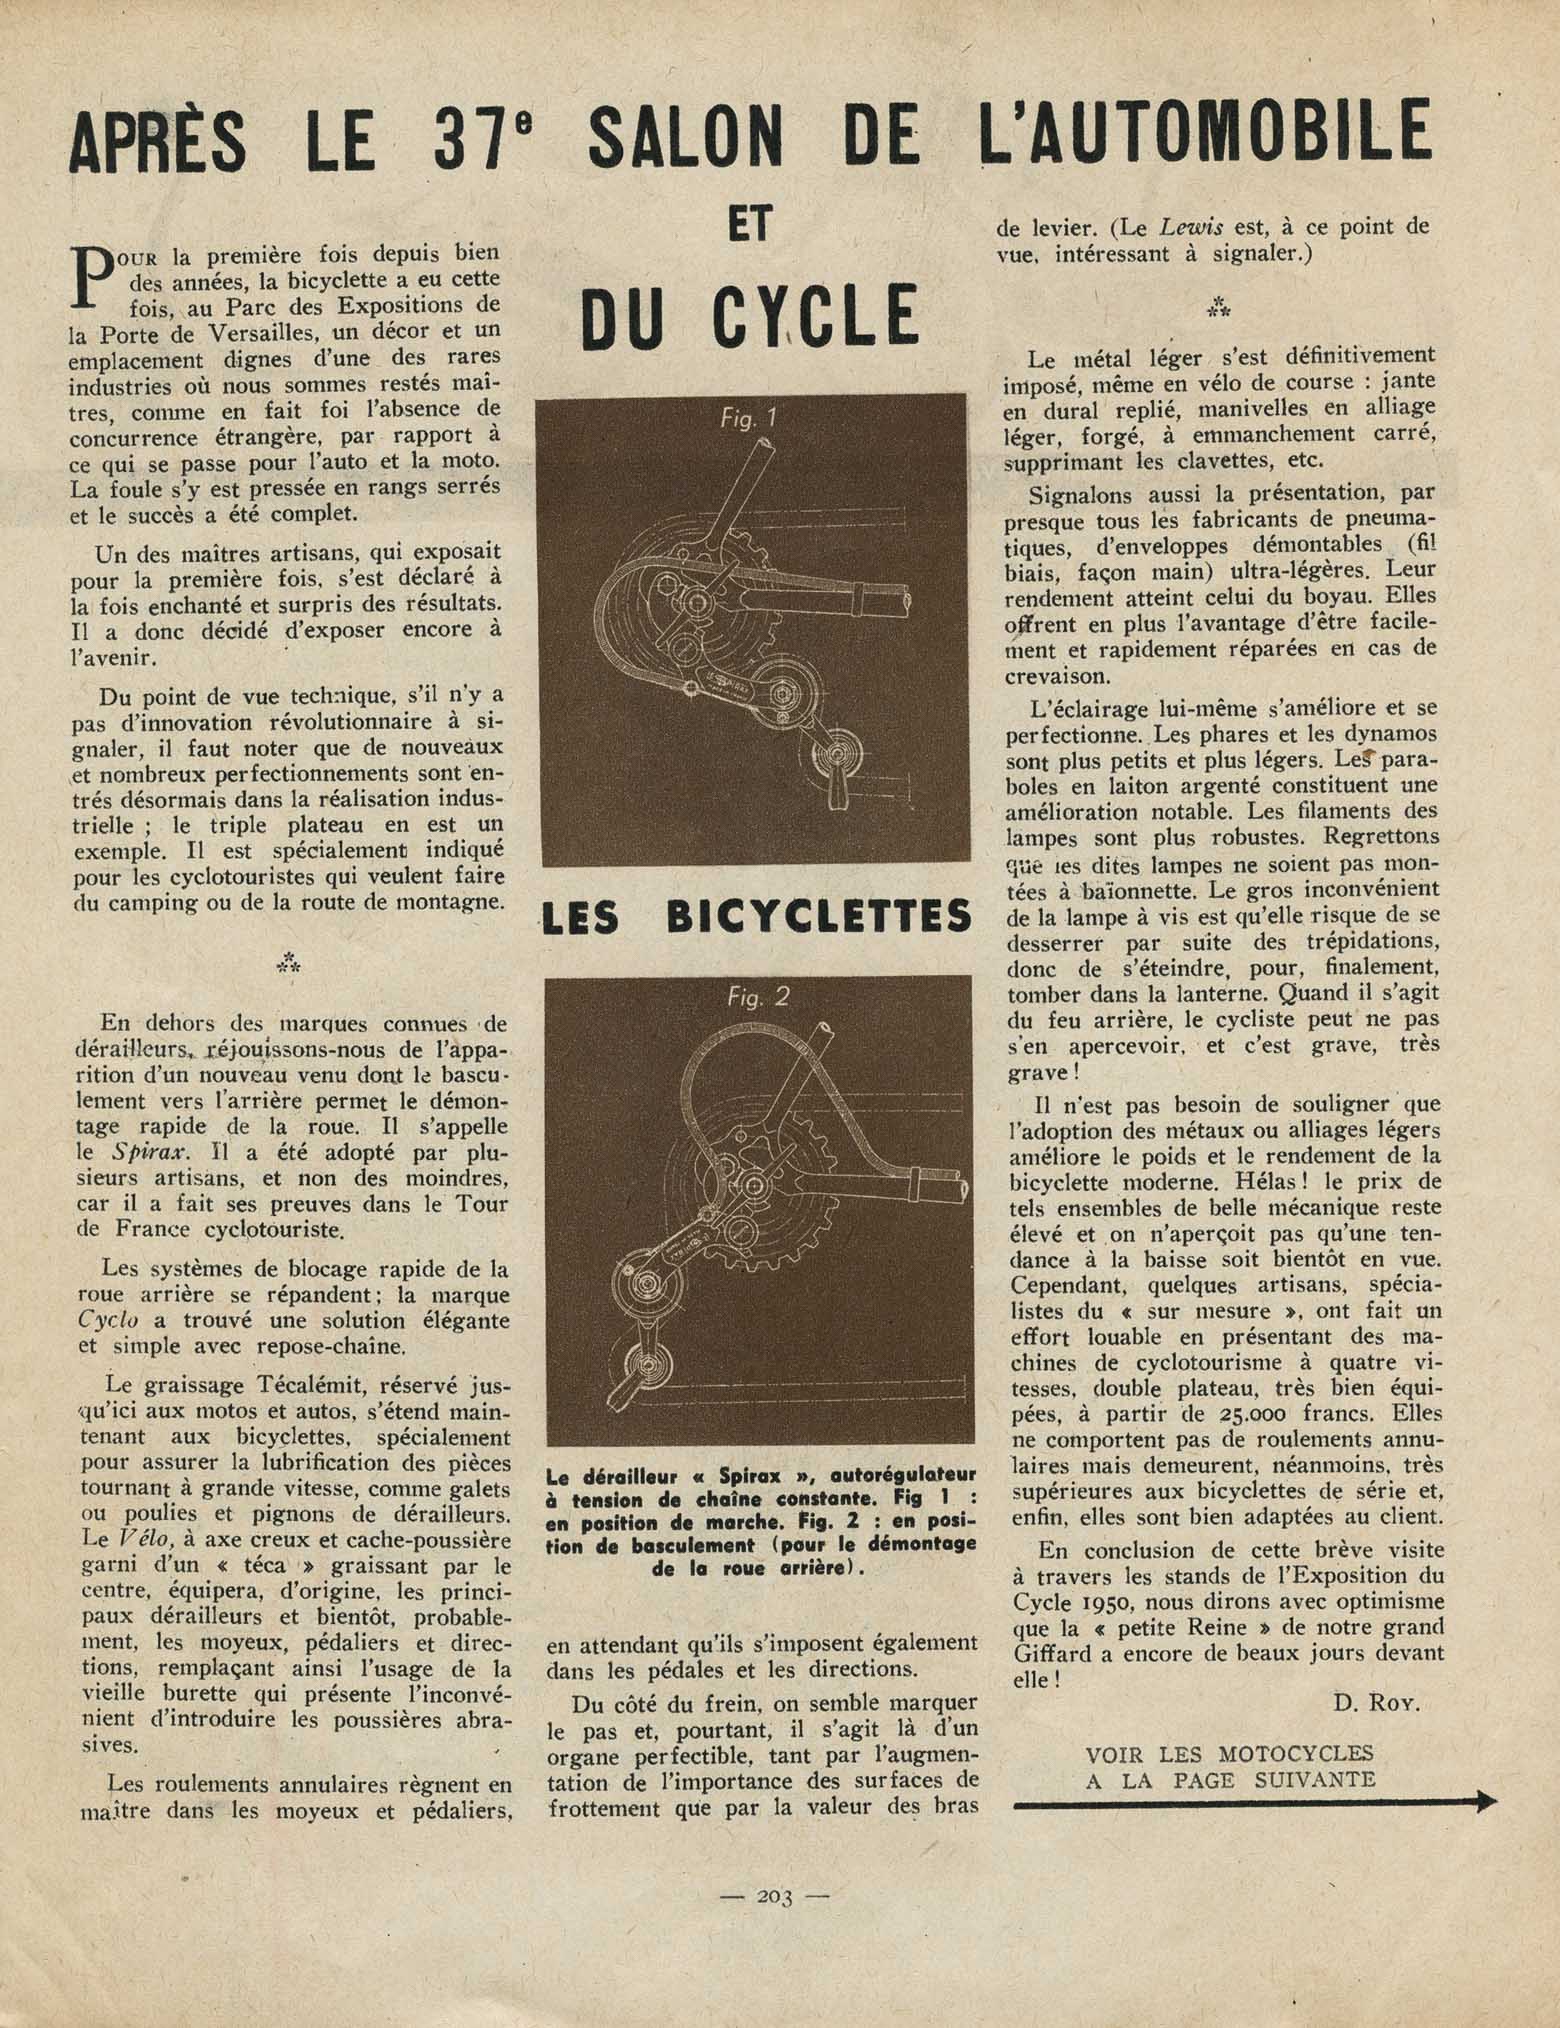 Unknown French magazine 1950? - Apres le 37e Salon de l'Automobile et du Cycle main image